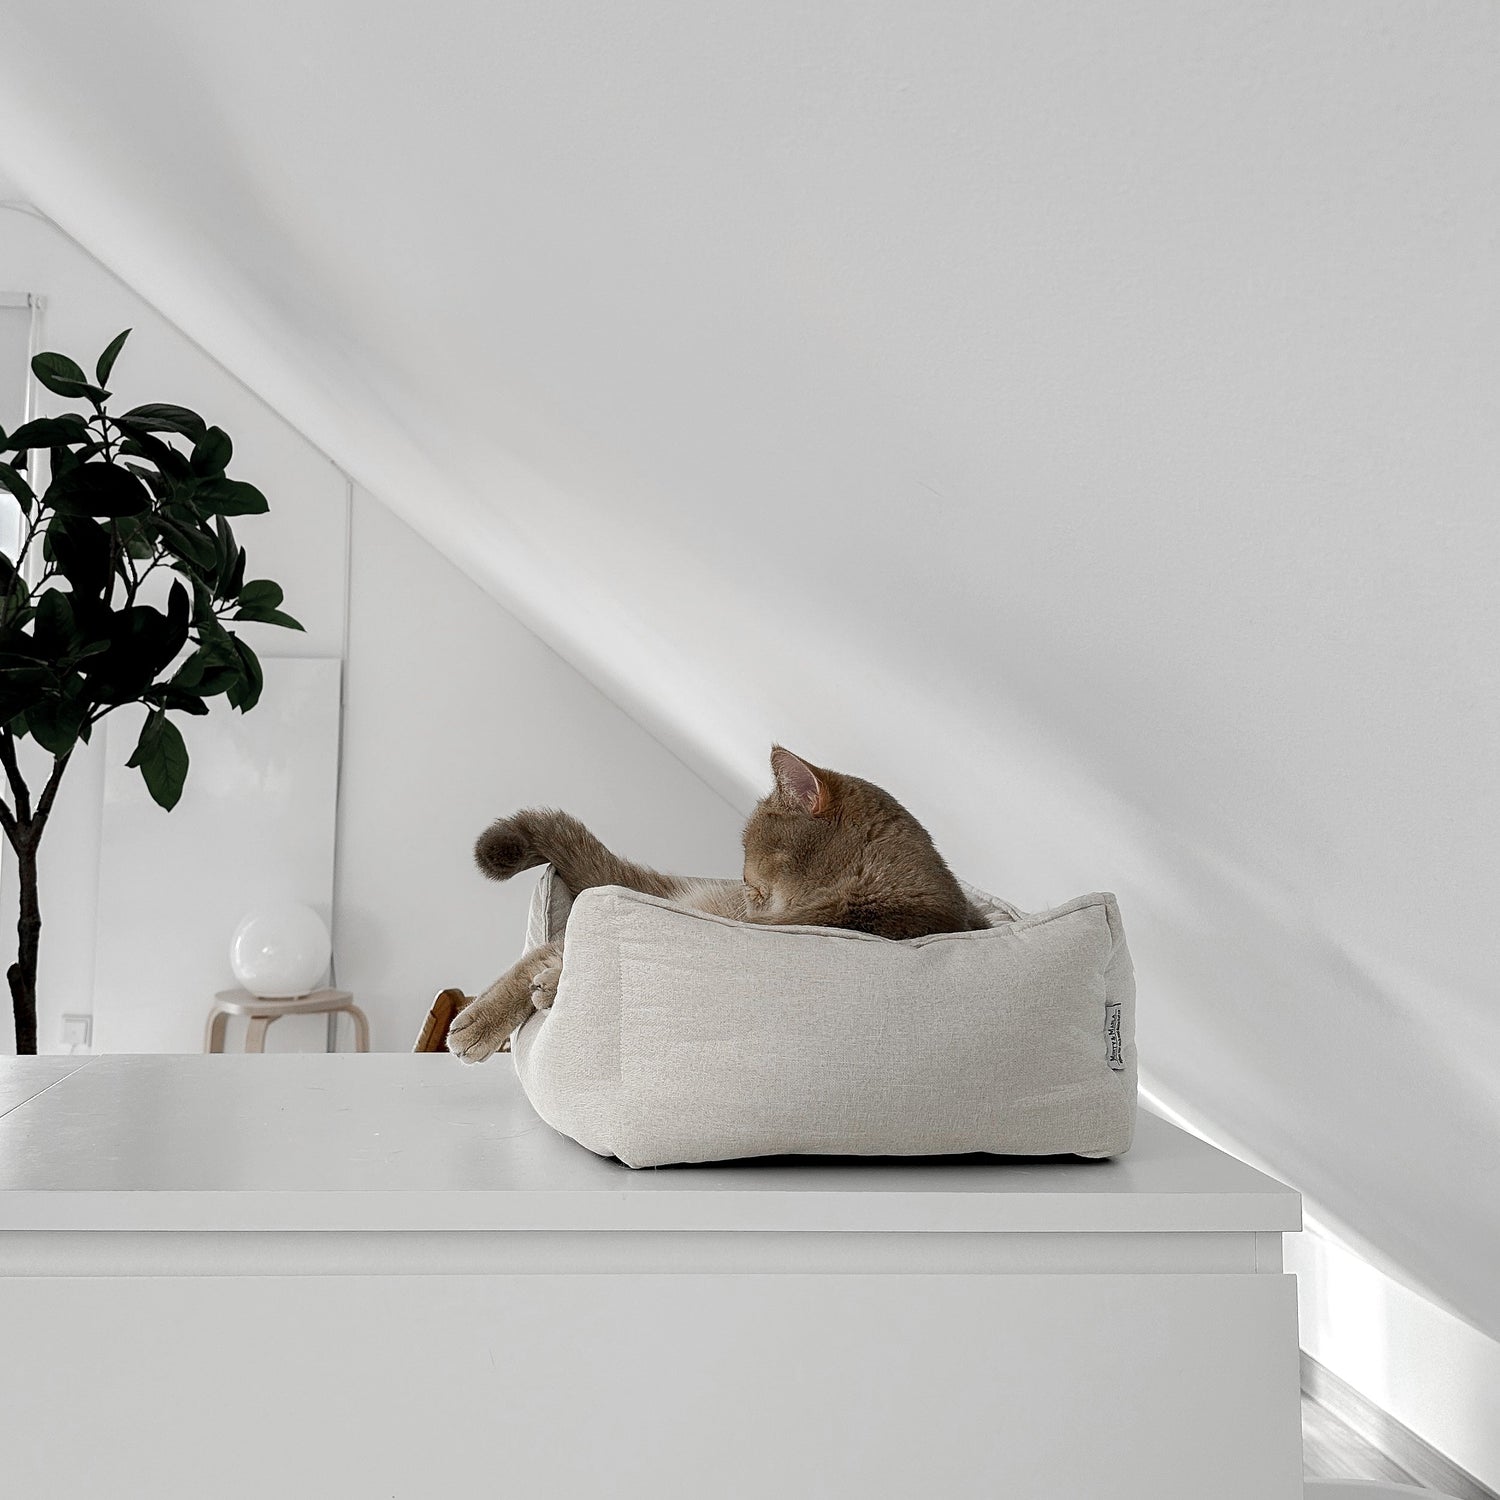 Schönes Körbchen für Katzen mit gemütlichen Innenkissen und anti-rutsch Unterseite als Rückzugsort für eine Fellnasen. Katzenbett aus hochwertigem Material in einer hellen und stilvollen Wohnung.